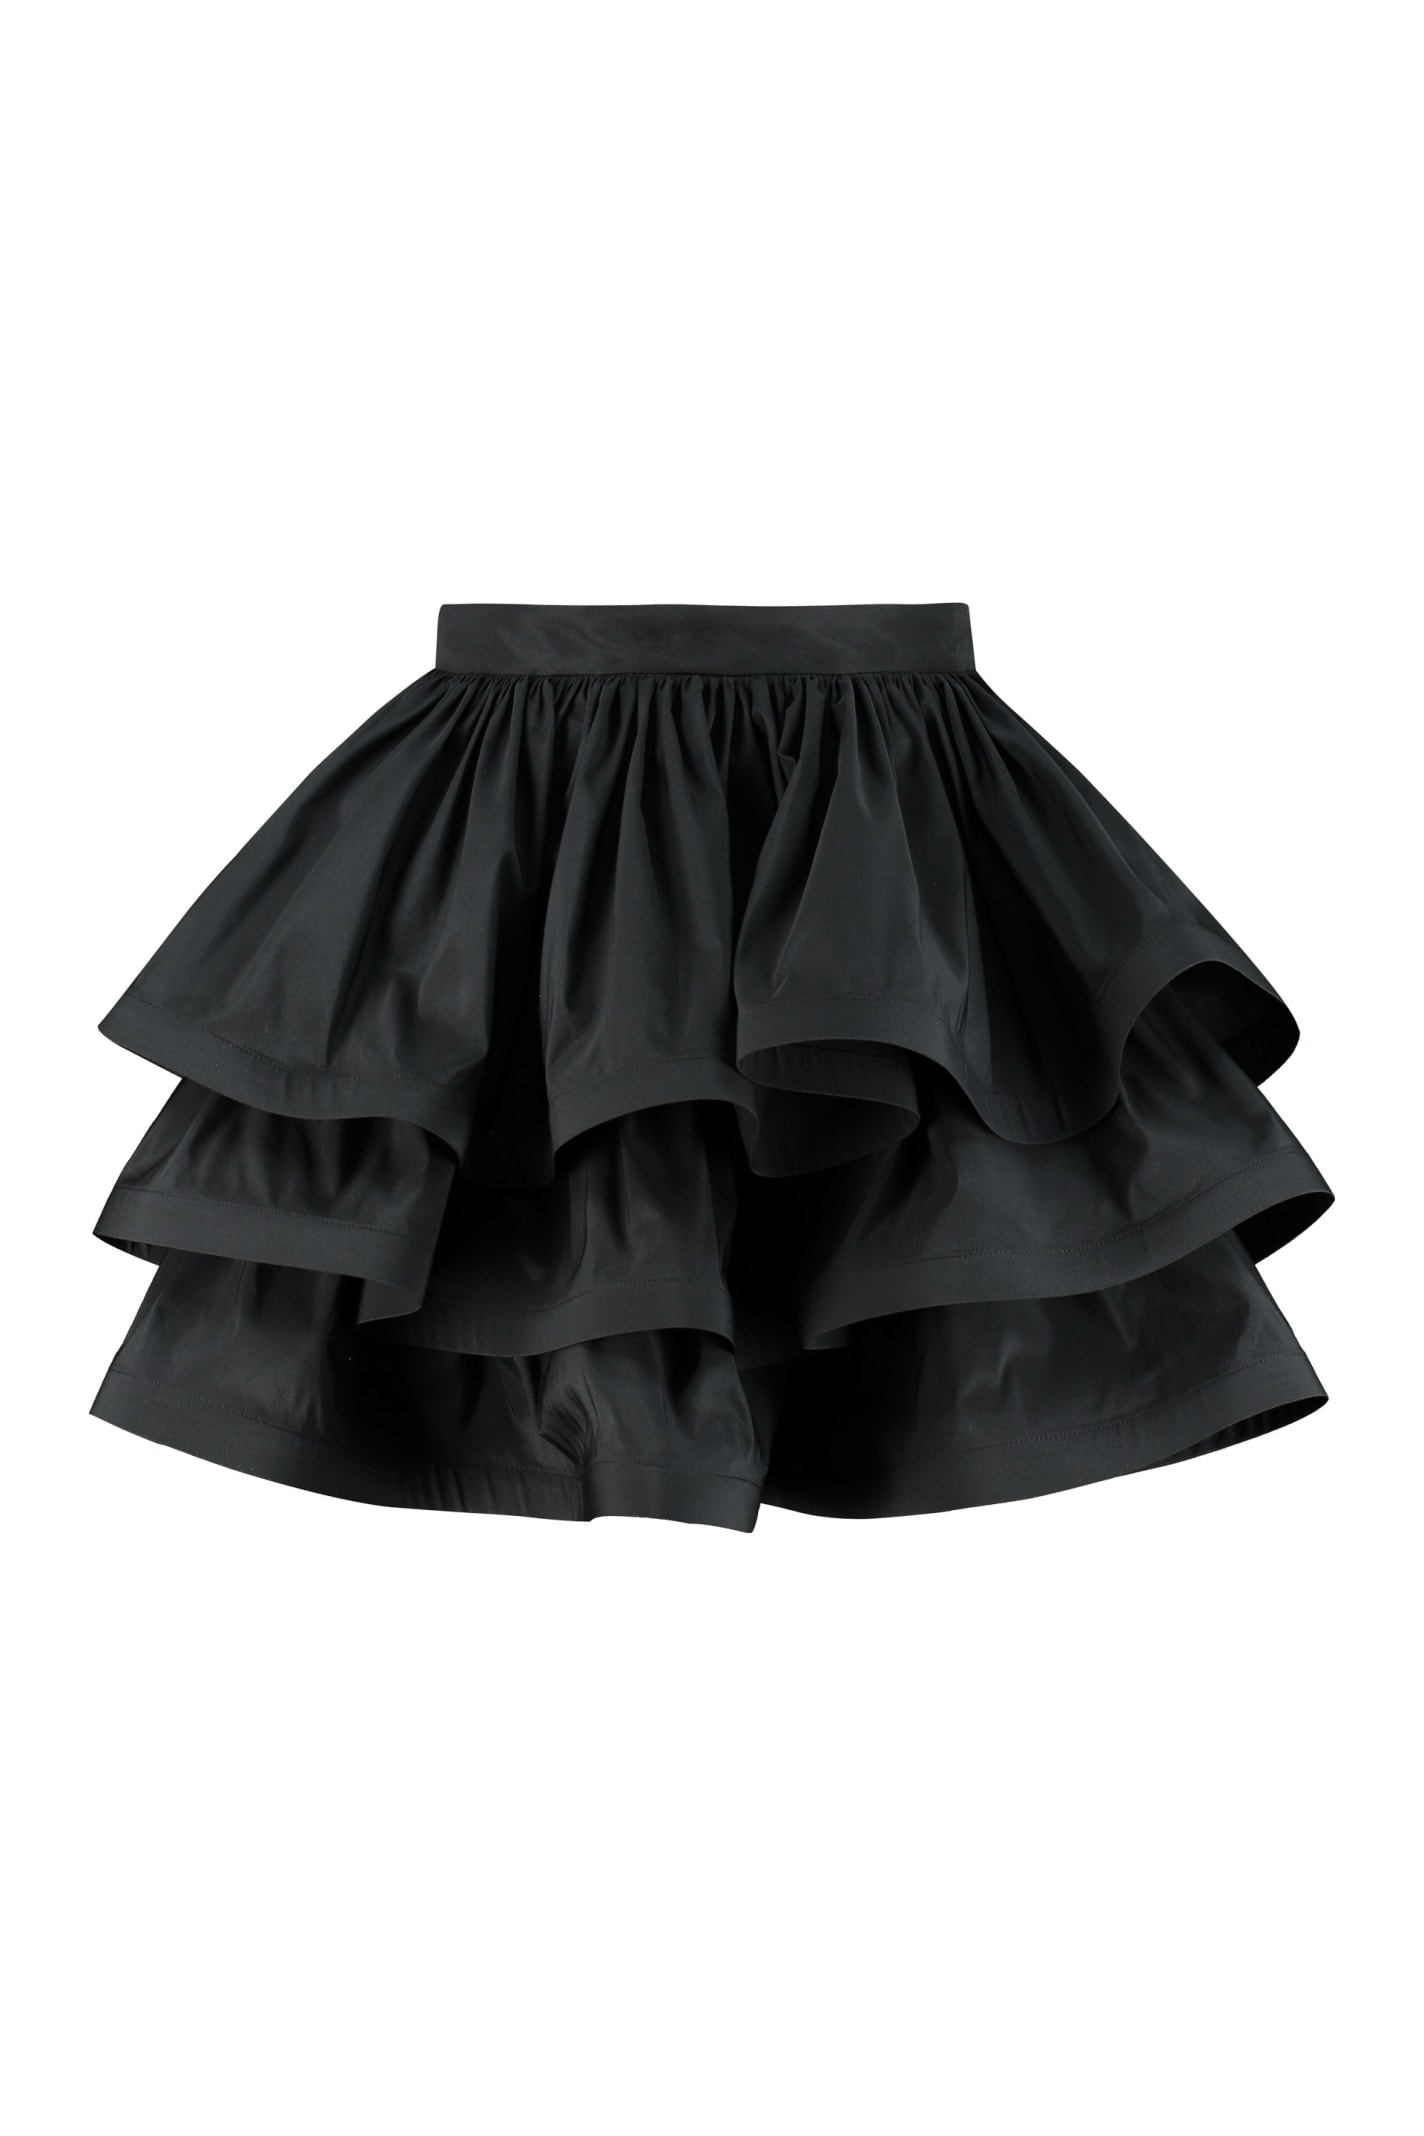 Elisabetta Franchi Ruffled Mini Skirt